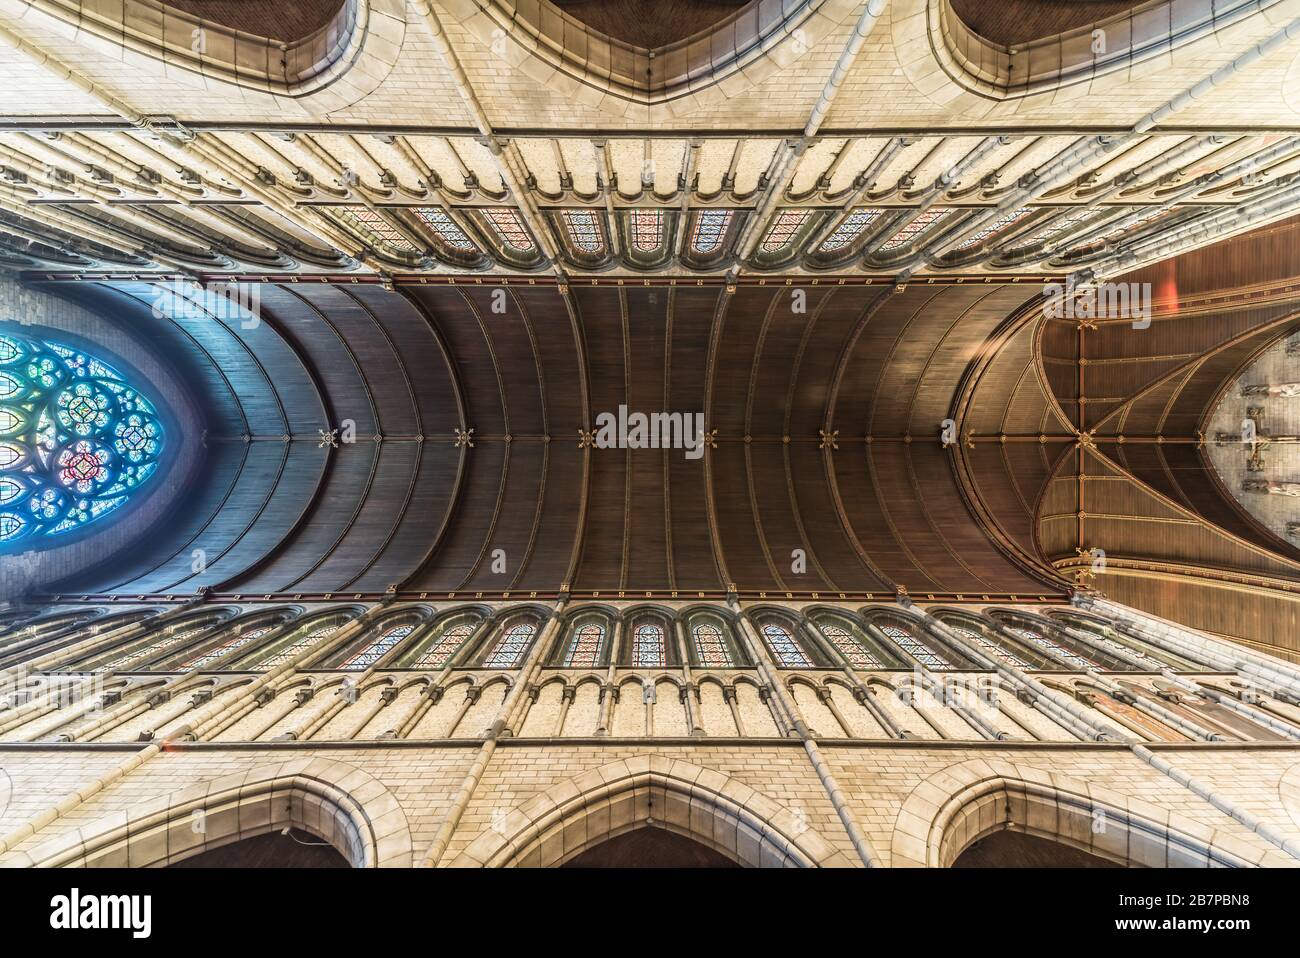 L'intérieur gothique décoré de l'église Saint-Rémigius à Molenbeek, Bruxelles, Belgique Banque D'Images